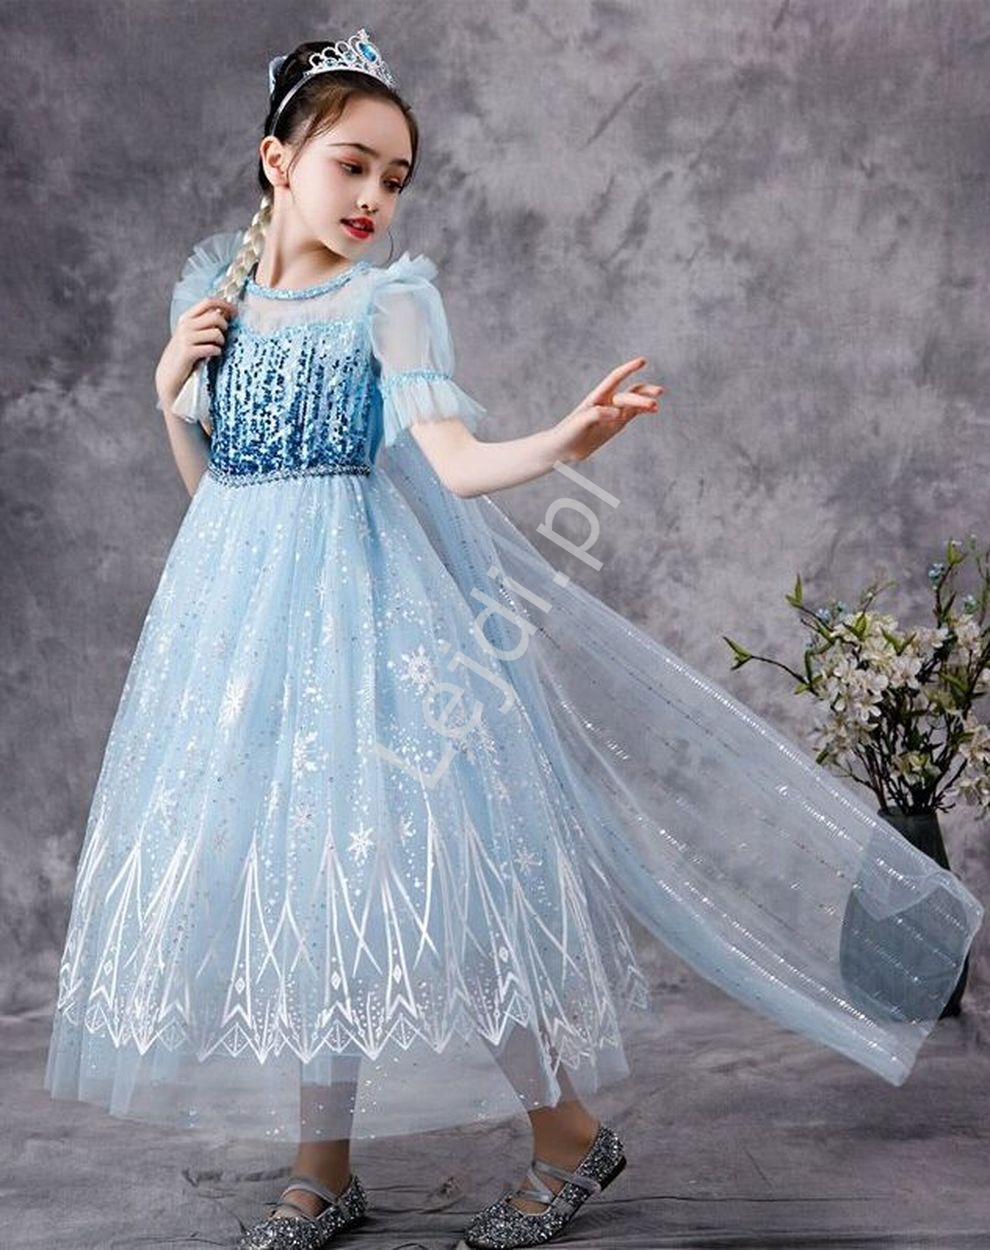 Strój karnawałowy Elsa z Krainy Lodu, błękitna sukienka i peleryna, przebranie Frozen